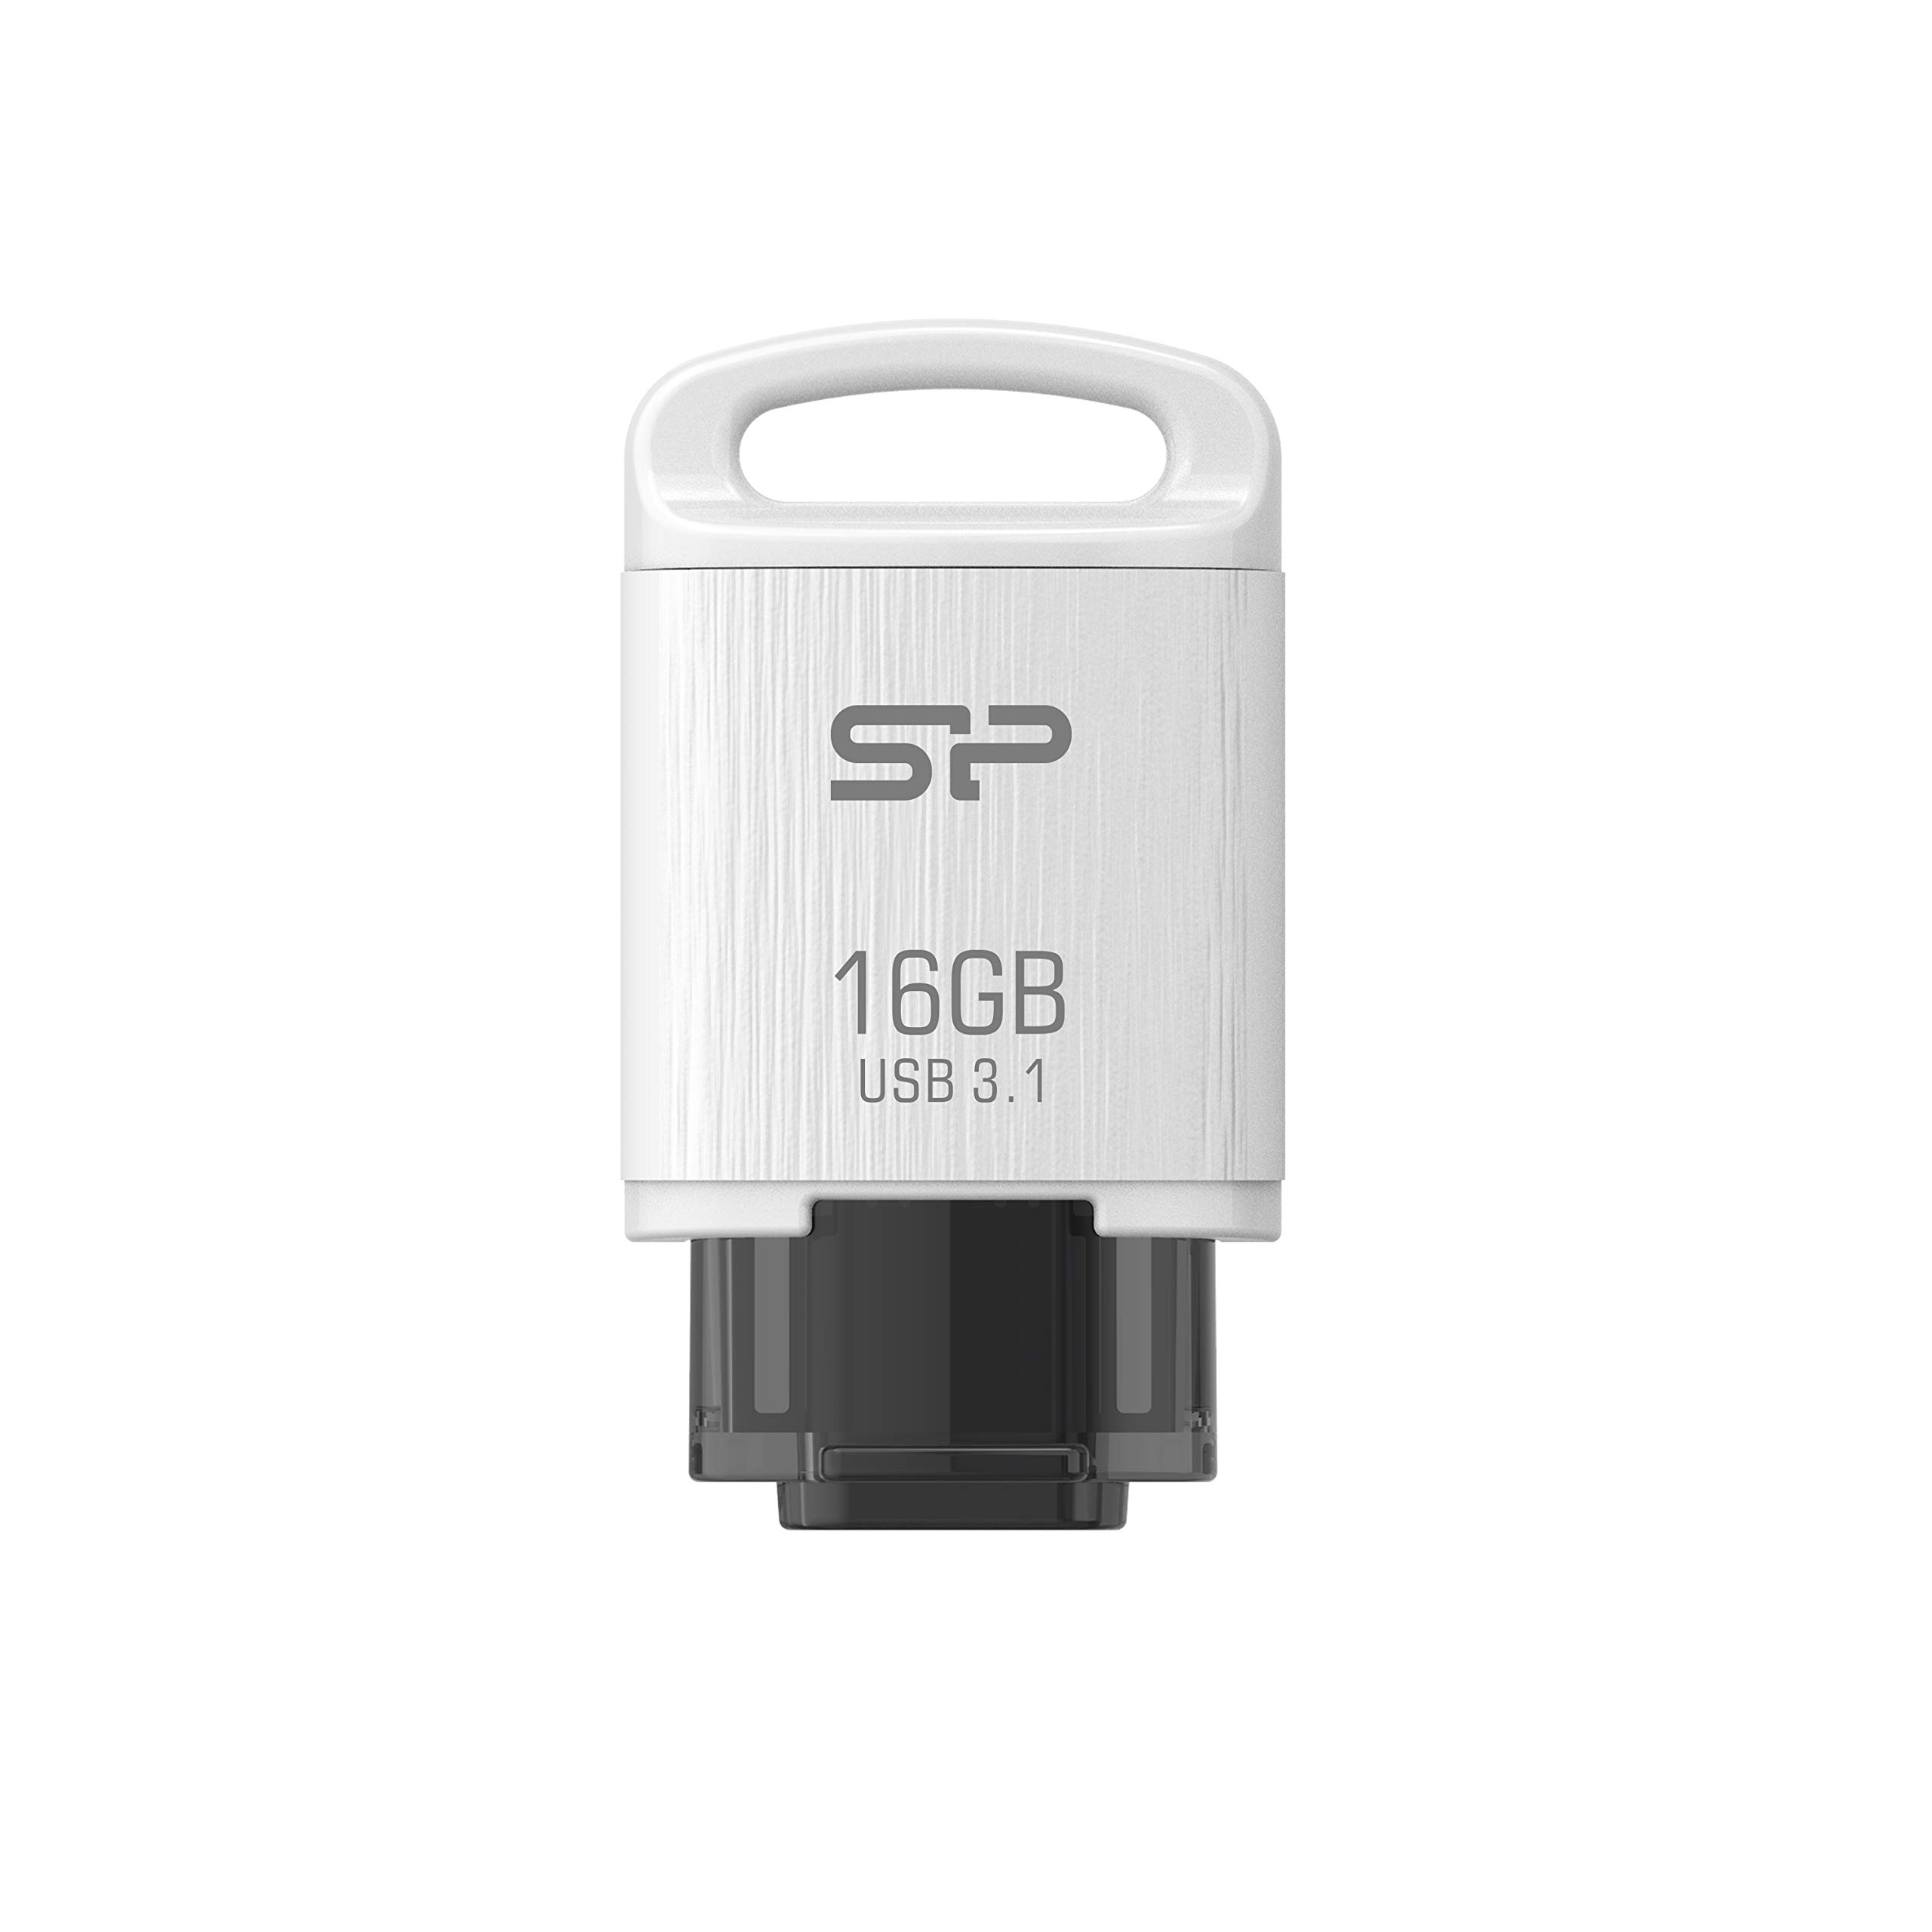 シリコンパワー USBメモリ Type-C 16GB USB3.1 (Gen1) ホワイト C10 SP016GBUC3C10V1W